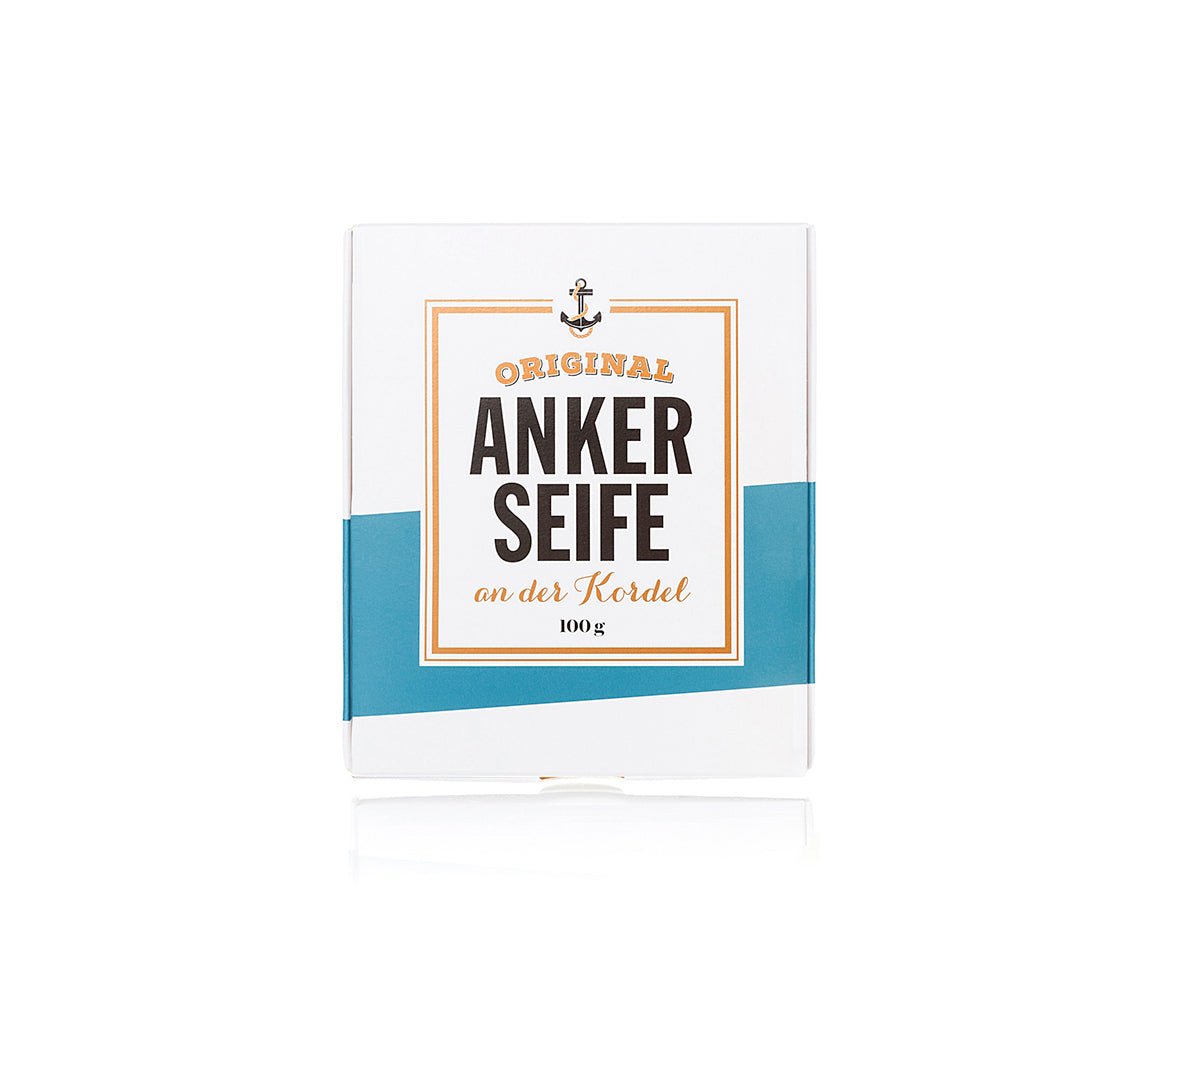 Anker Seife - Ankerherz Verlag